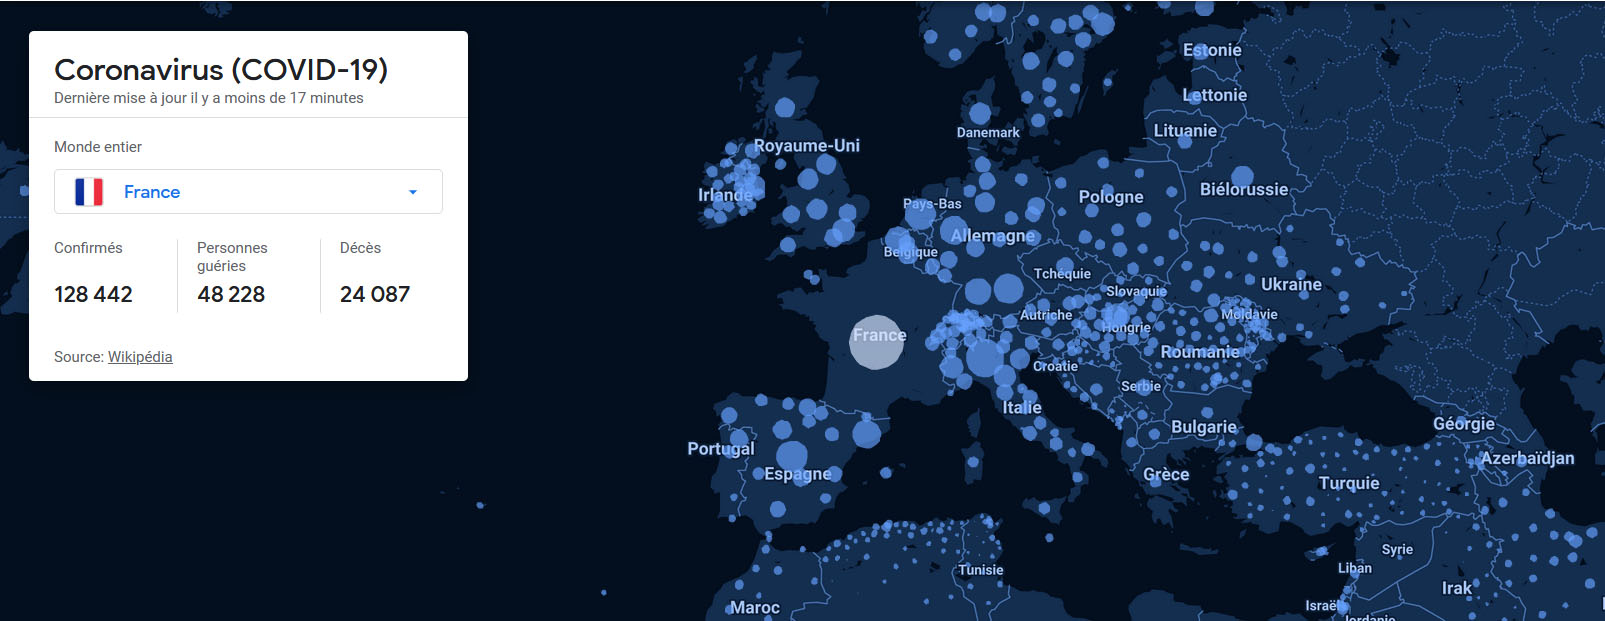 Carte interactive des données mondiales sur le coronavirus Covid-19